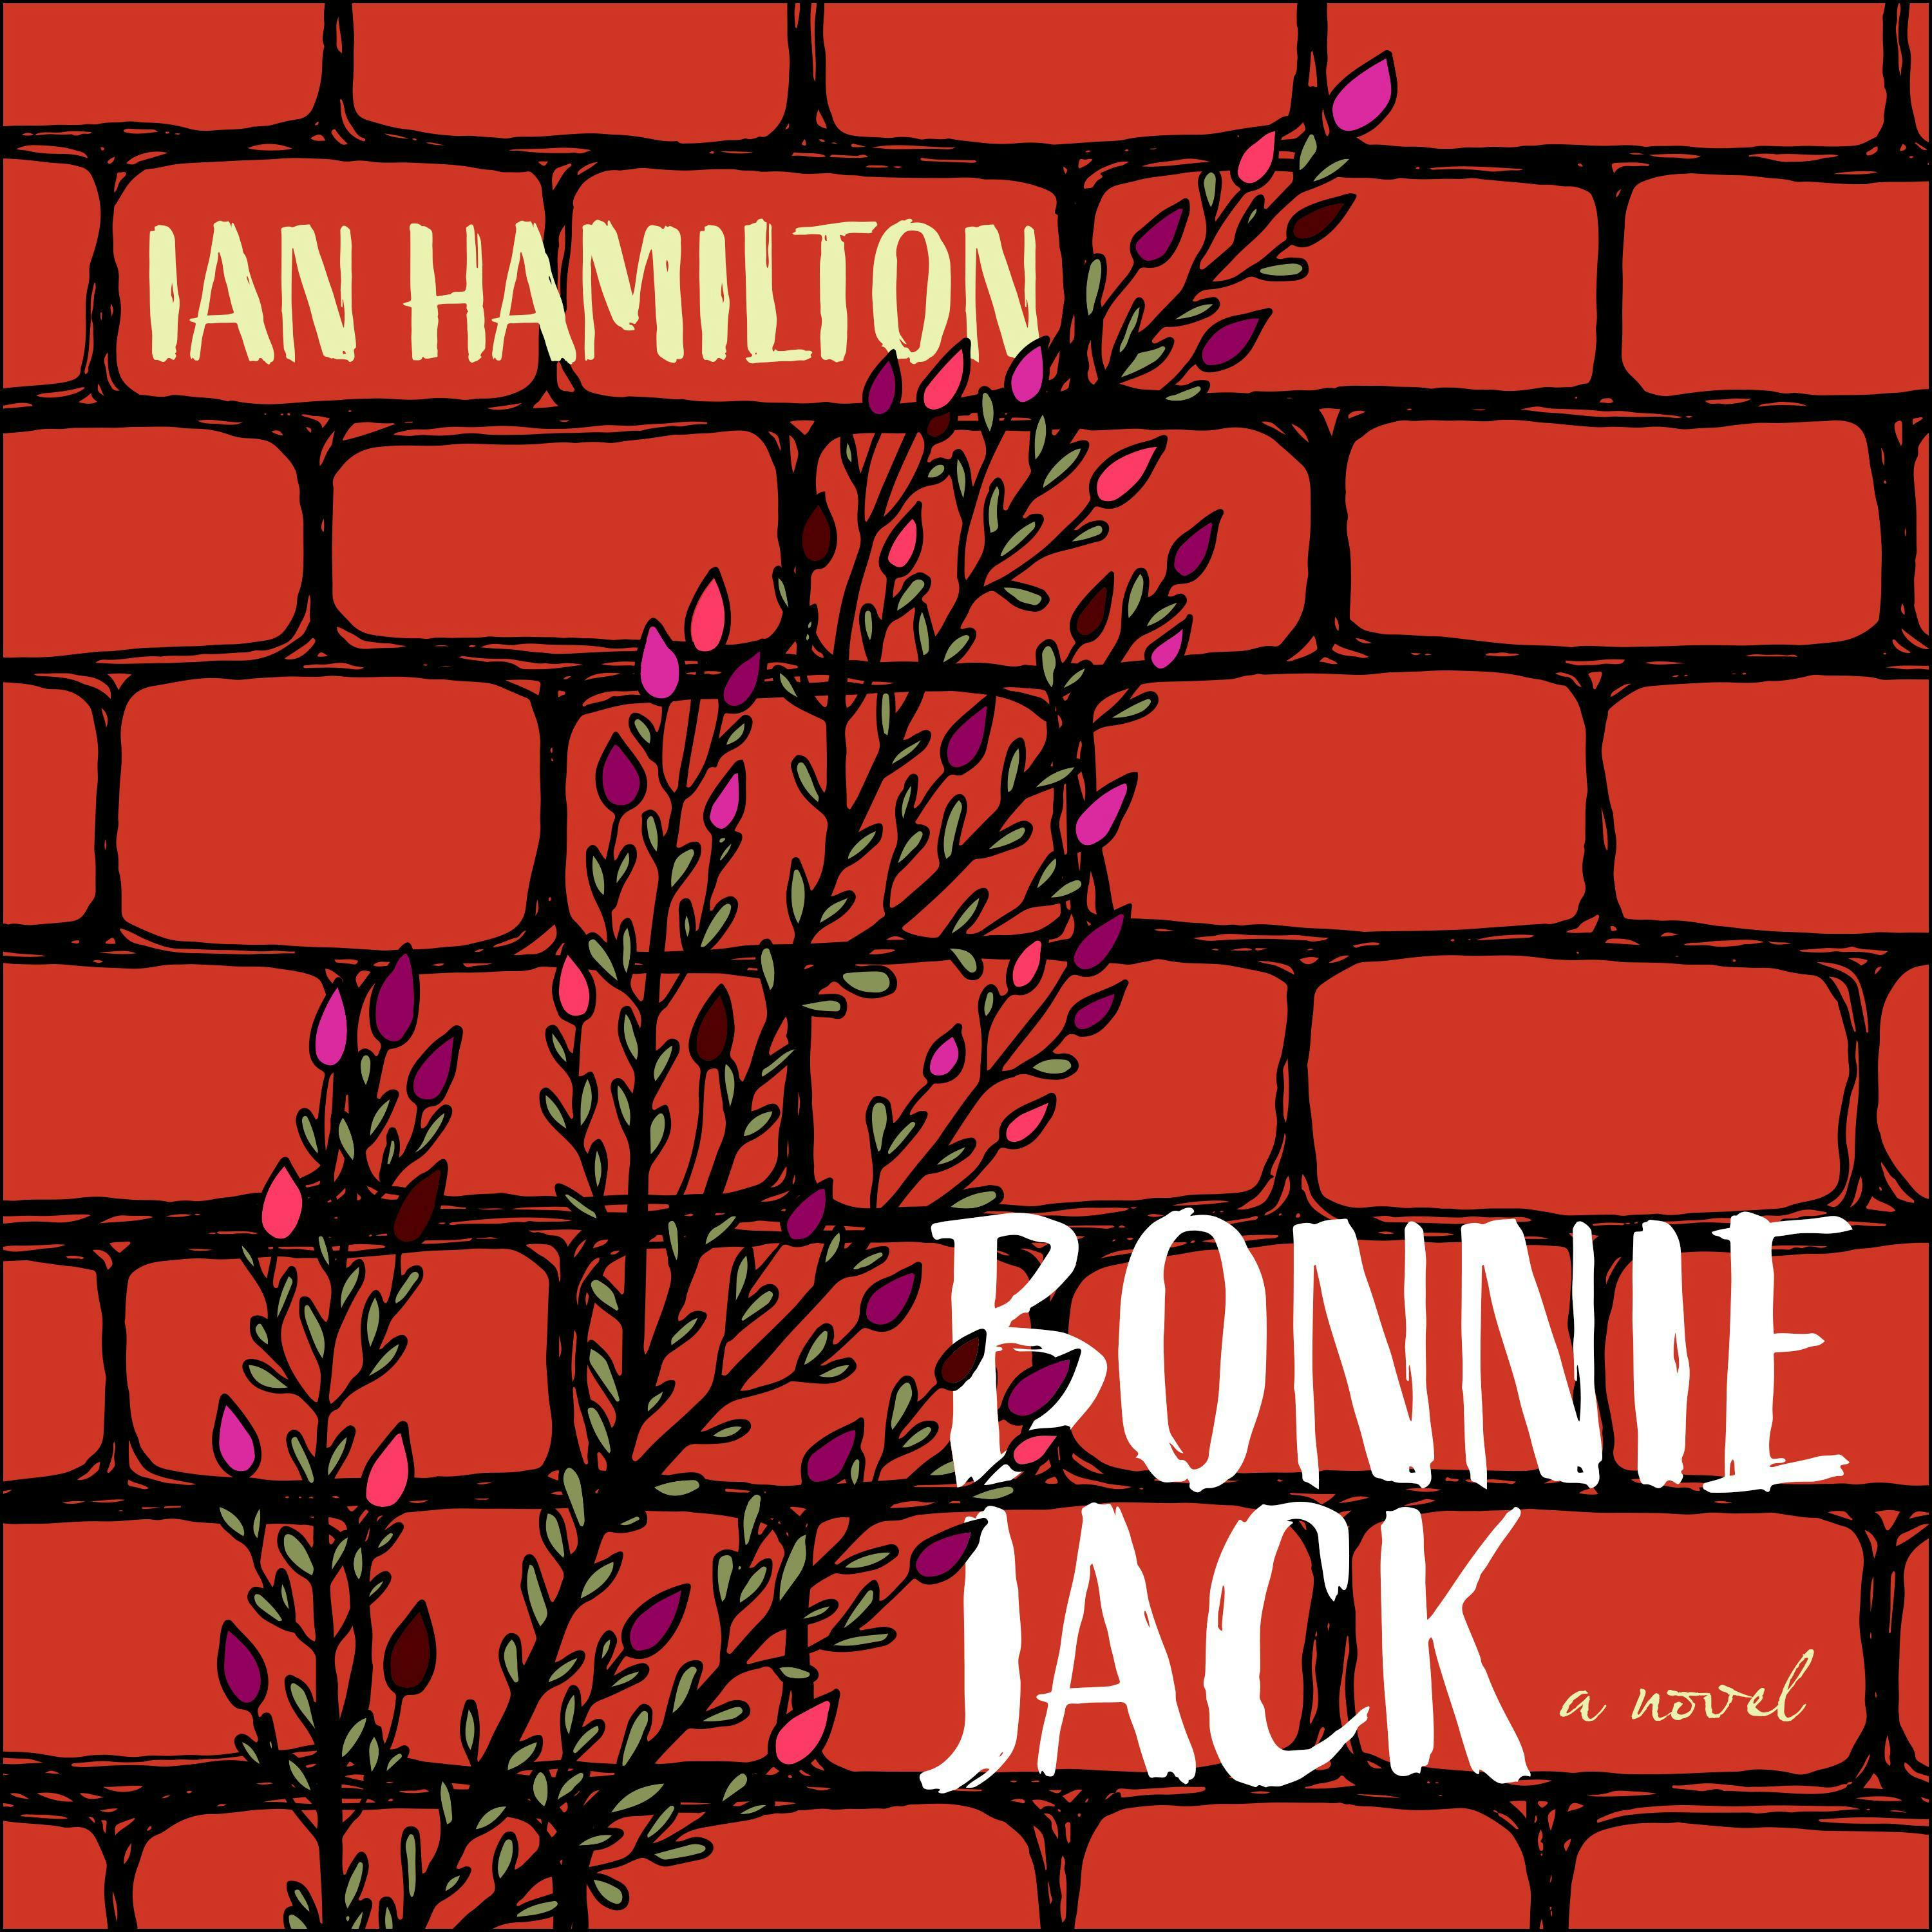 Bonnie Jack - Ian Hamilton